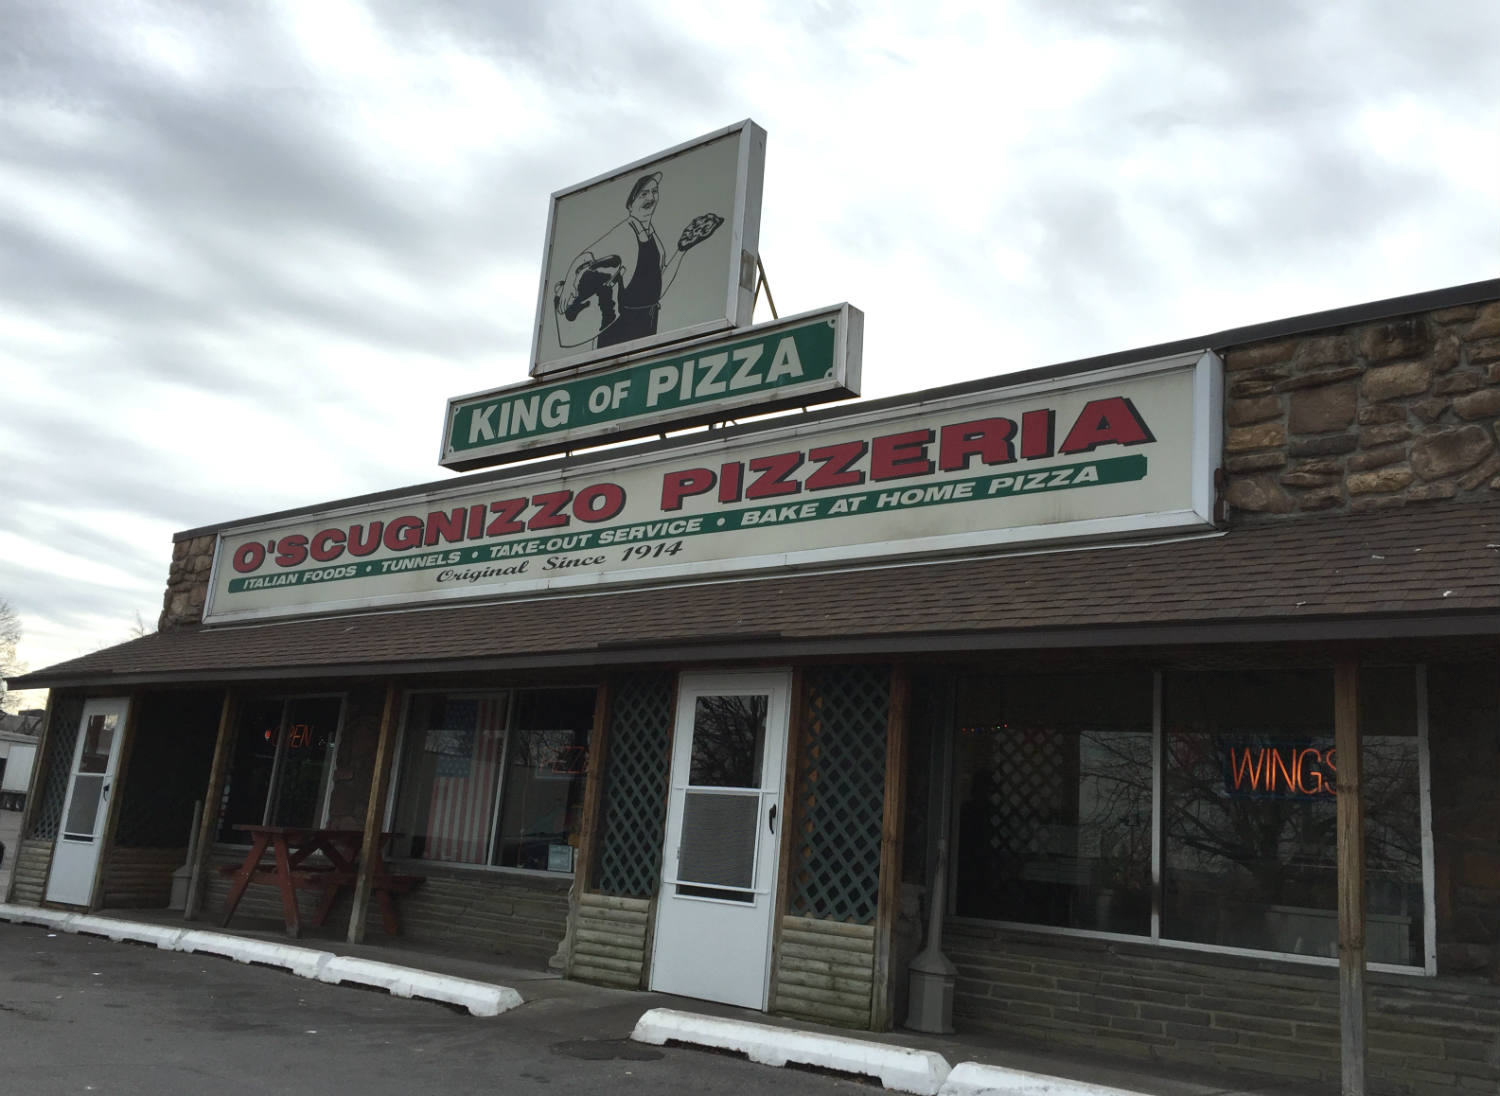 O'Scugnizzo Pizzeria Store Front in Utica, New York